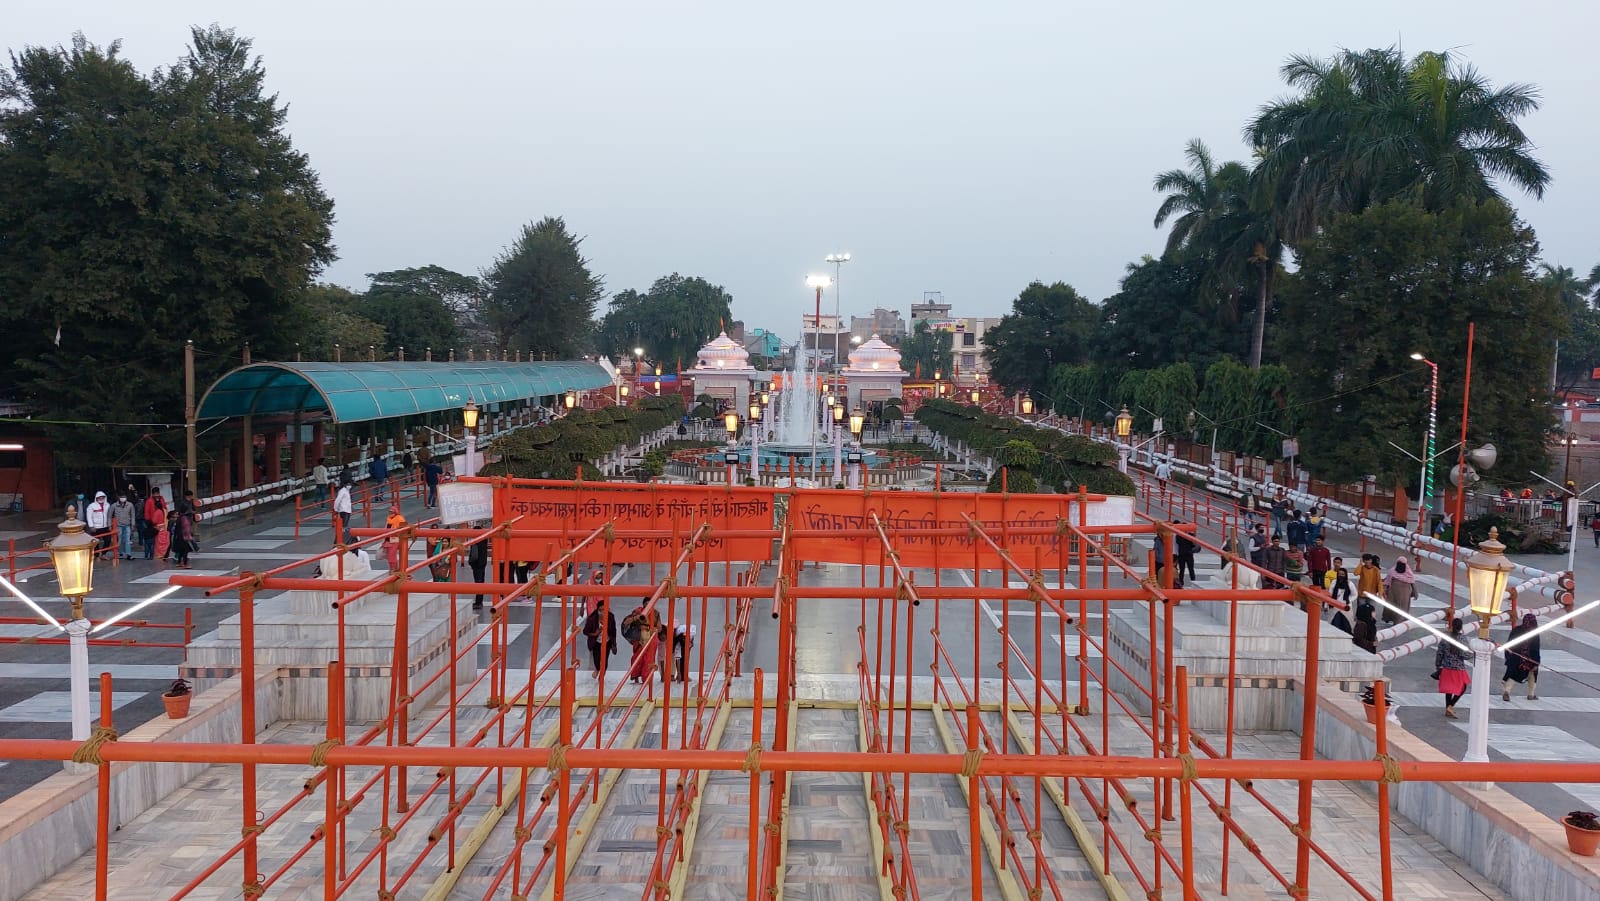 गोरखनाथ मंदिर